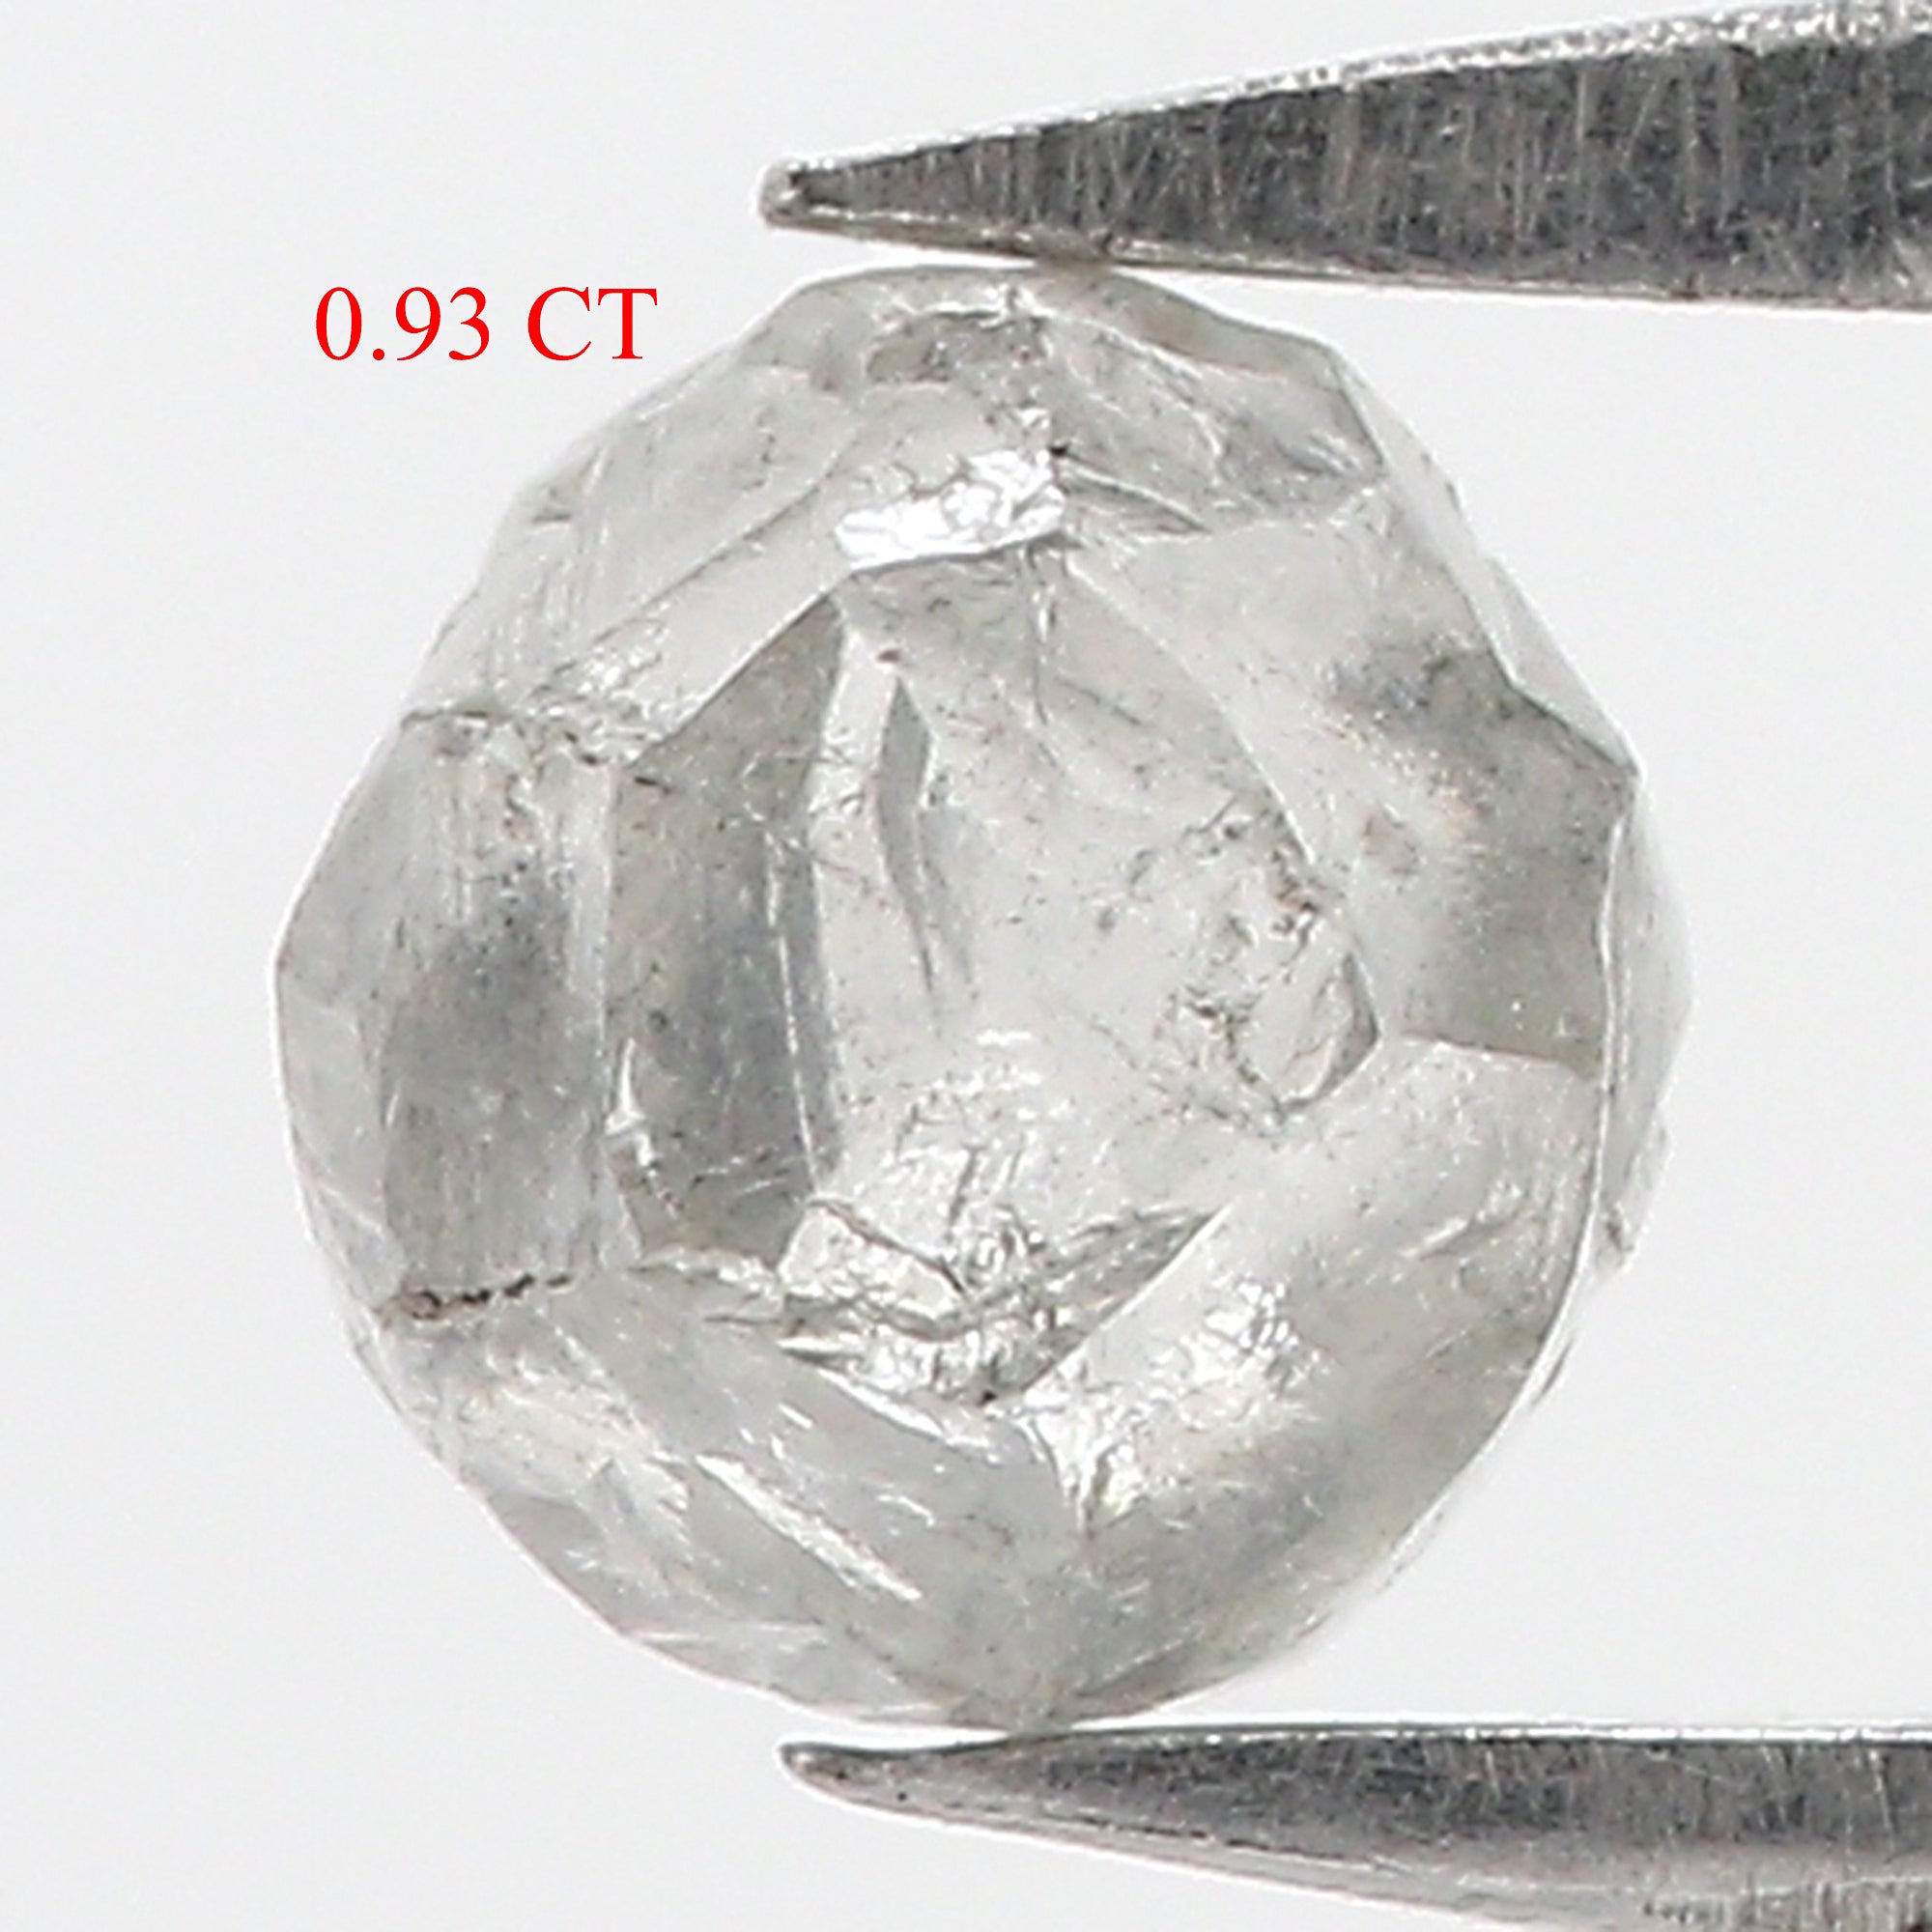 0.93 CT Natural Loose Rough Shape Diamond Grey Color Rough Diamond 5.10 MM Natural Loose Grey Diamond Rough Irregular Cut Diamond QL3114